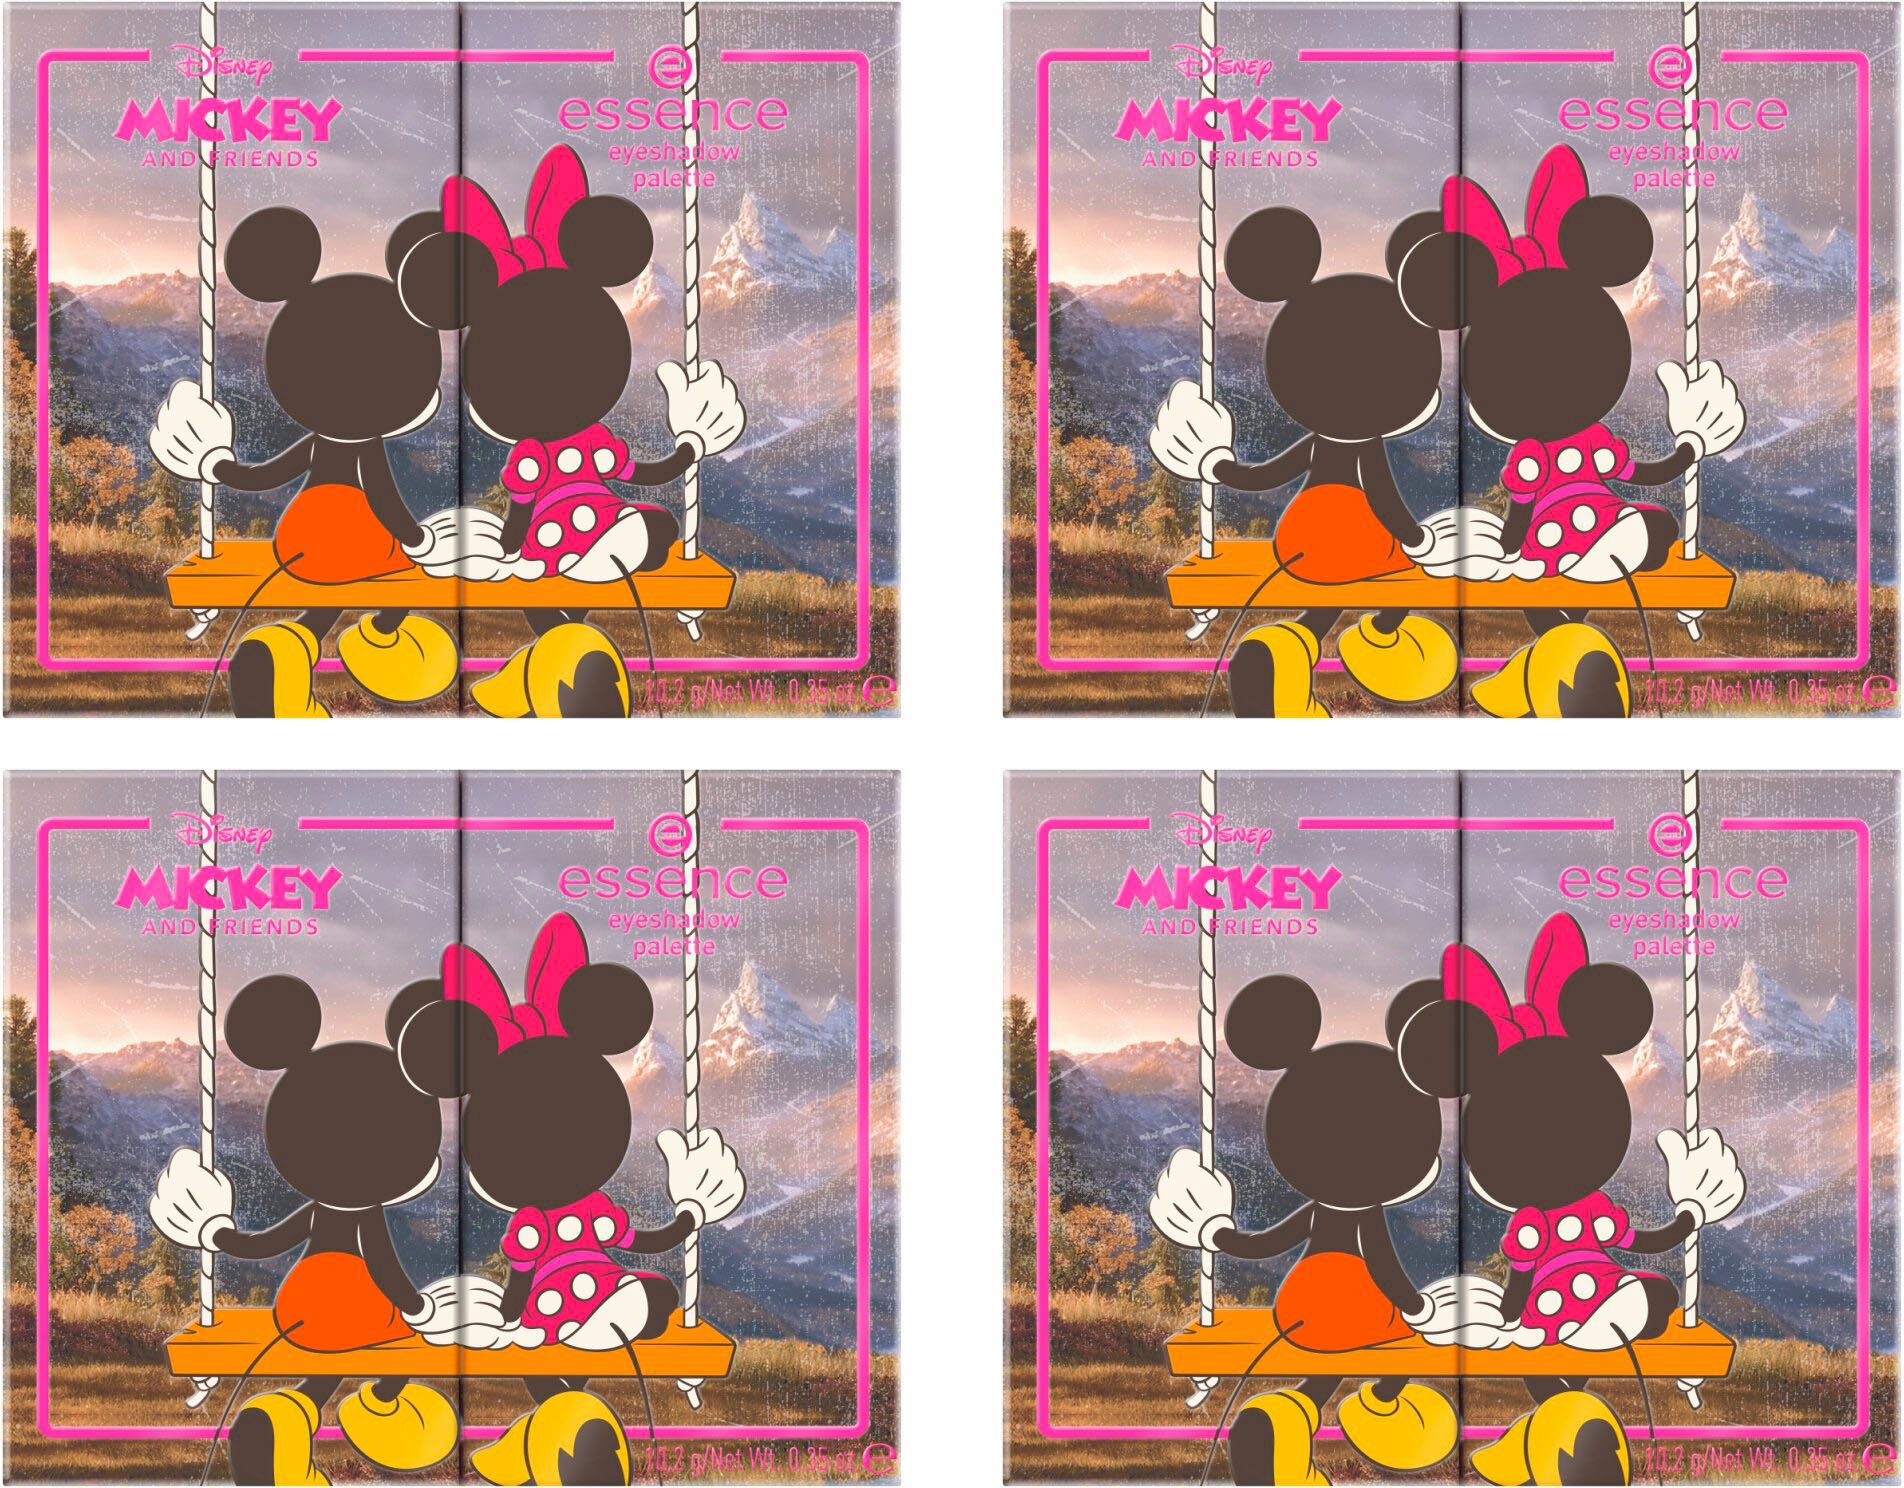 Essence Lidschatten-Palette Disney palette, für eyeshadow Augen-Make-Up abwechslungsreiche Friends Looks and Mickey